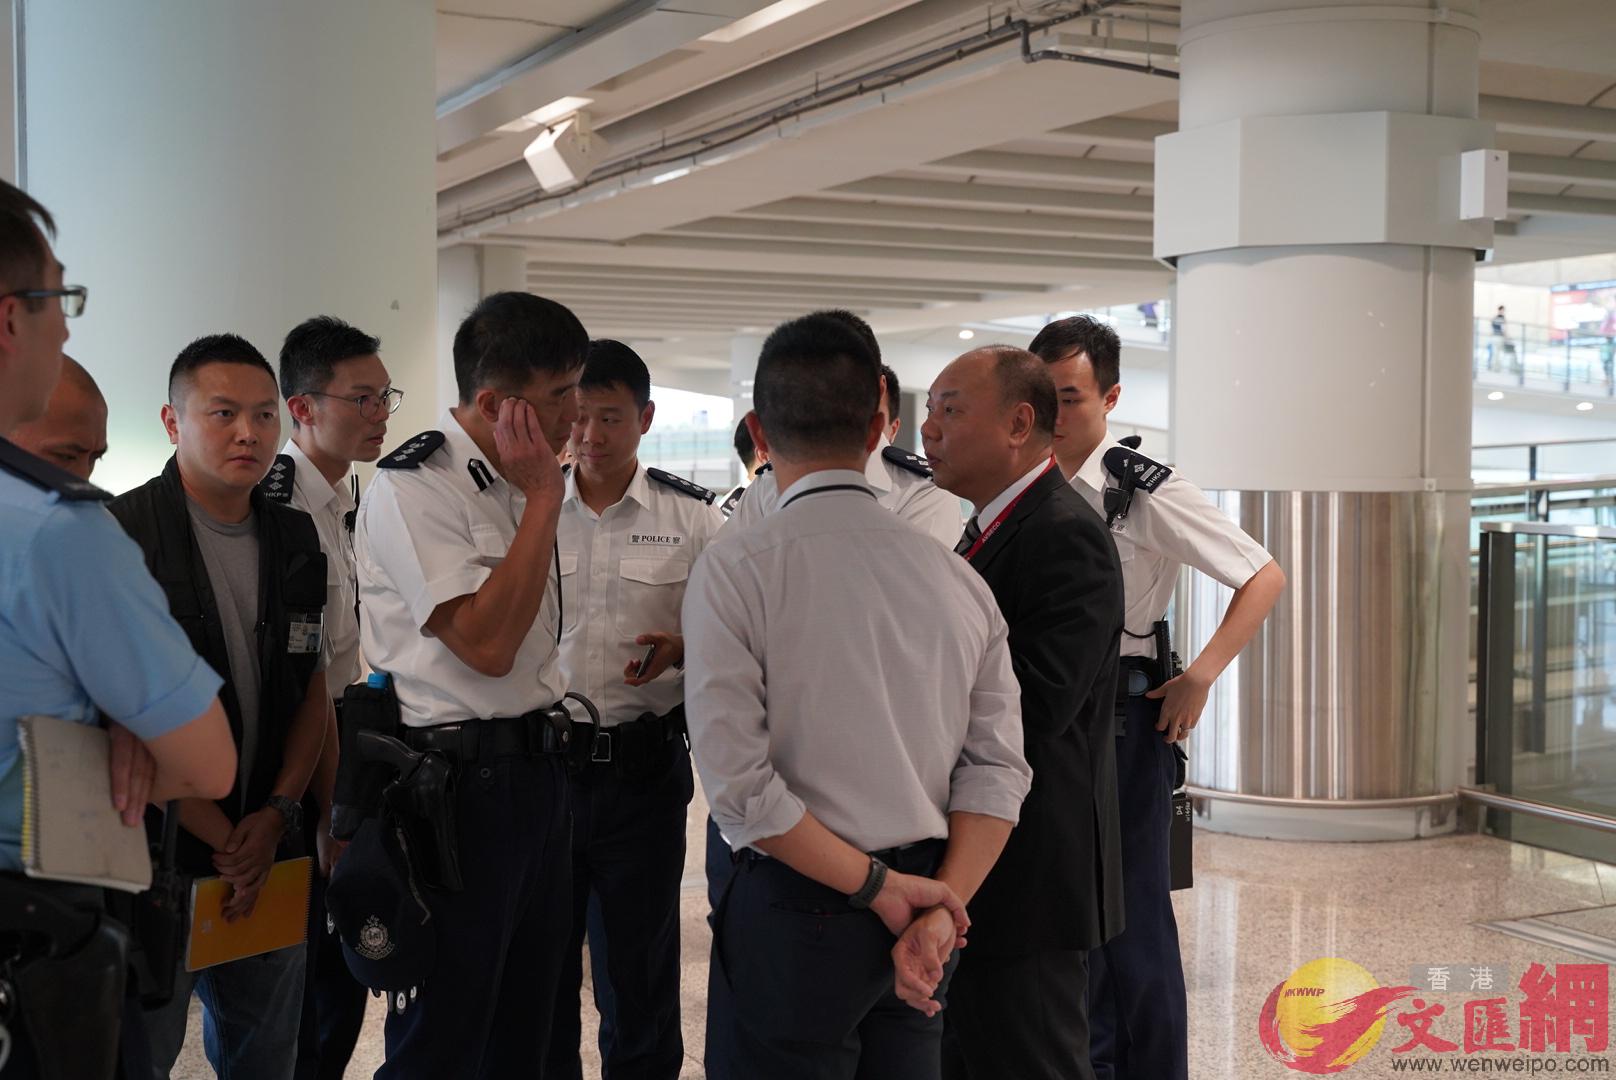 警察在機場範圍內執勤]大公文匯全媒體記者攝^